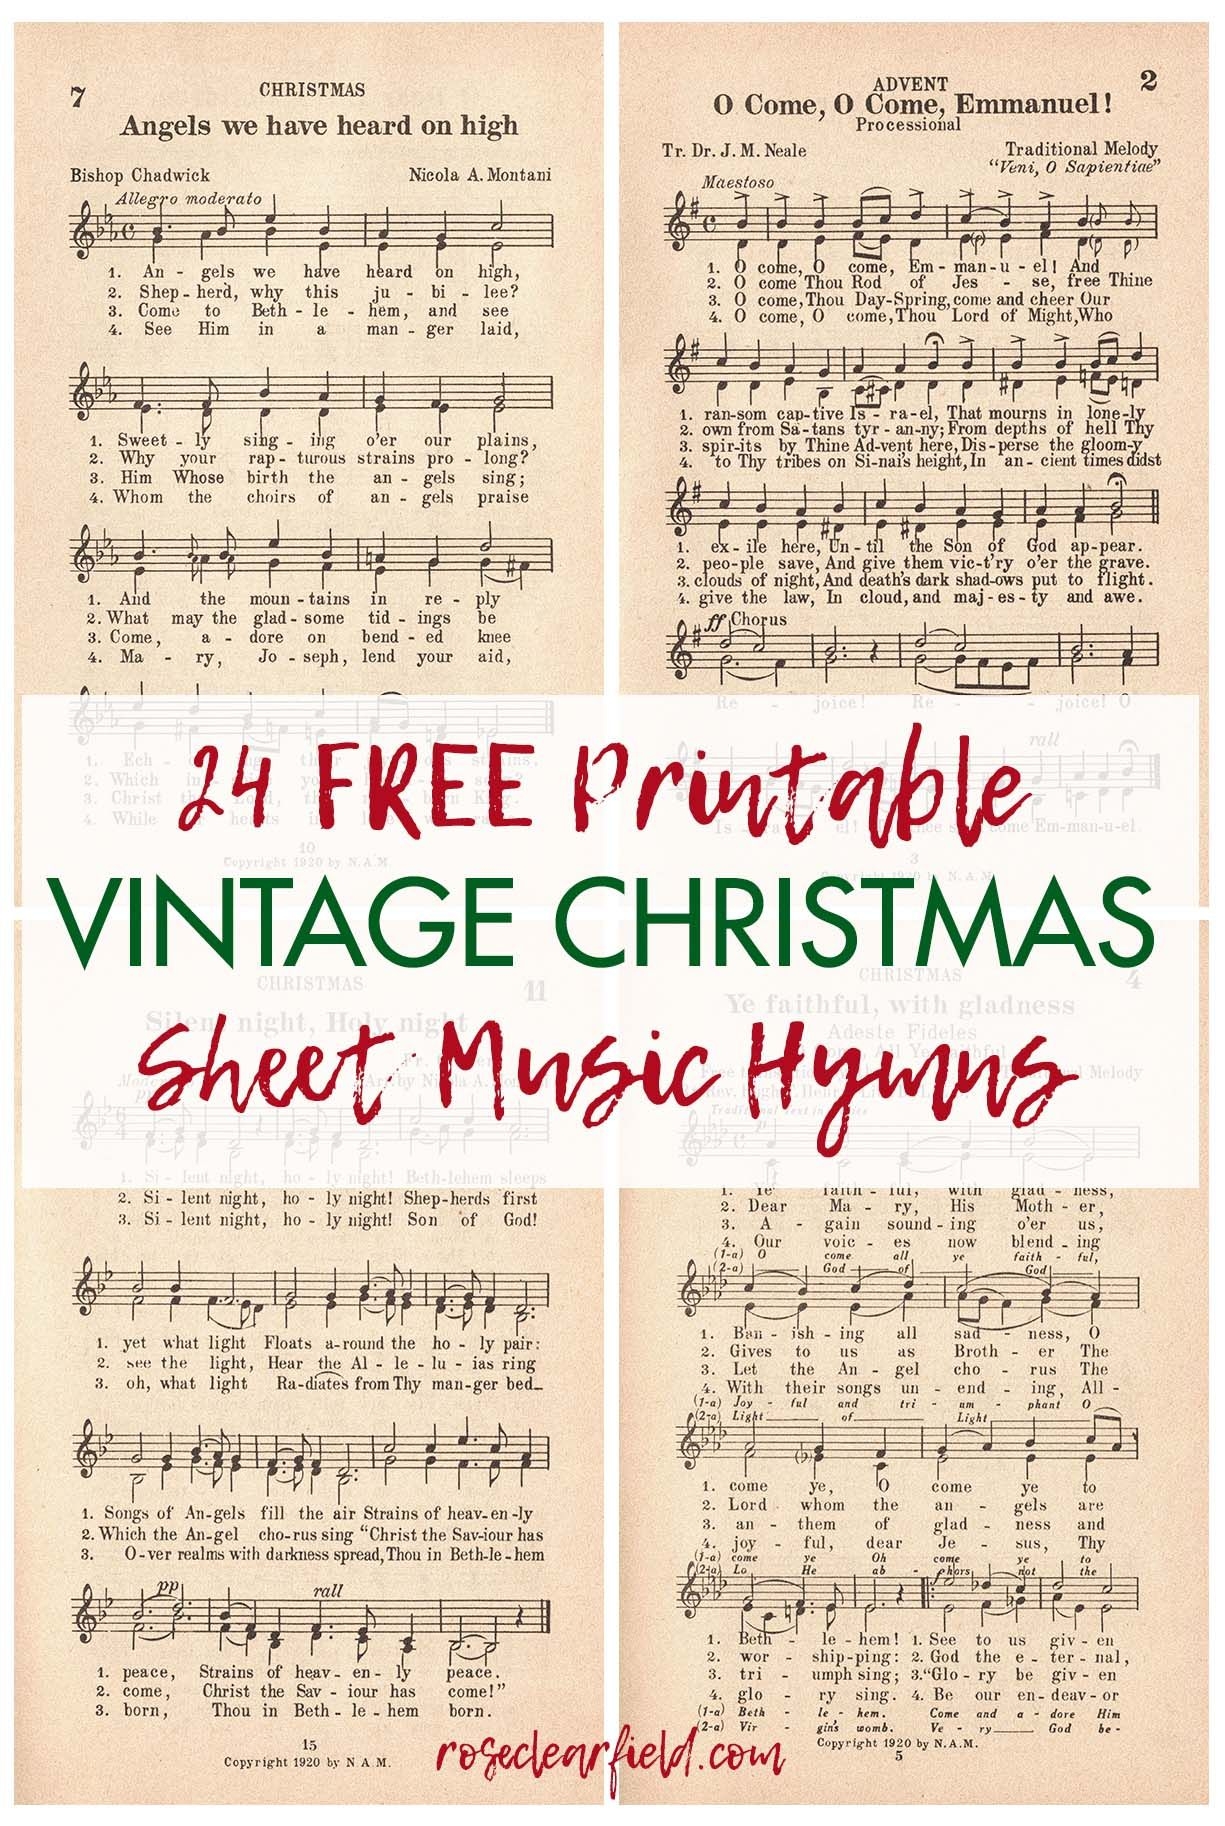 Free Printable Vintage Christmas Sheet Music Hymns Rose Clearfield Christmas Sheet Music Free Christmas Printables Hymn Sheet Music - Christmas Carols Sheet Music Free Printable